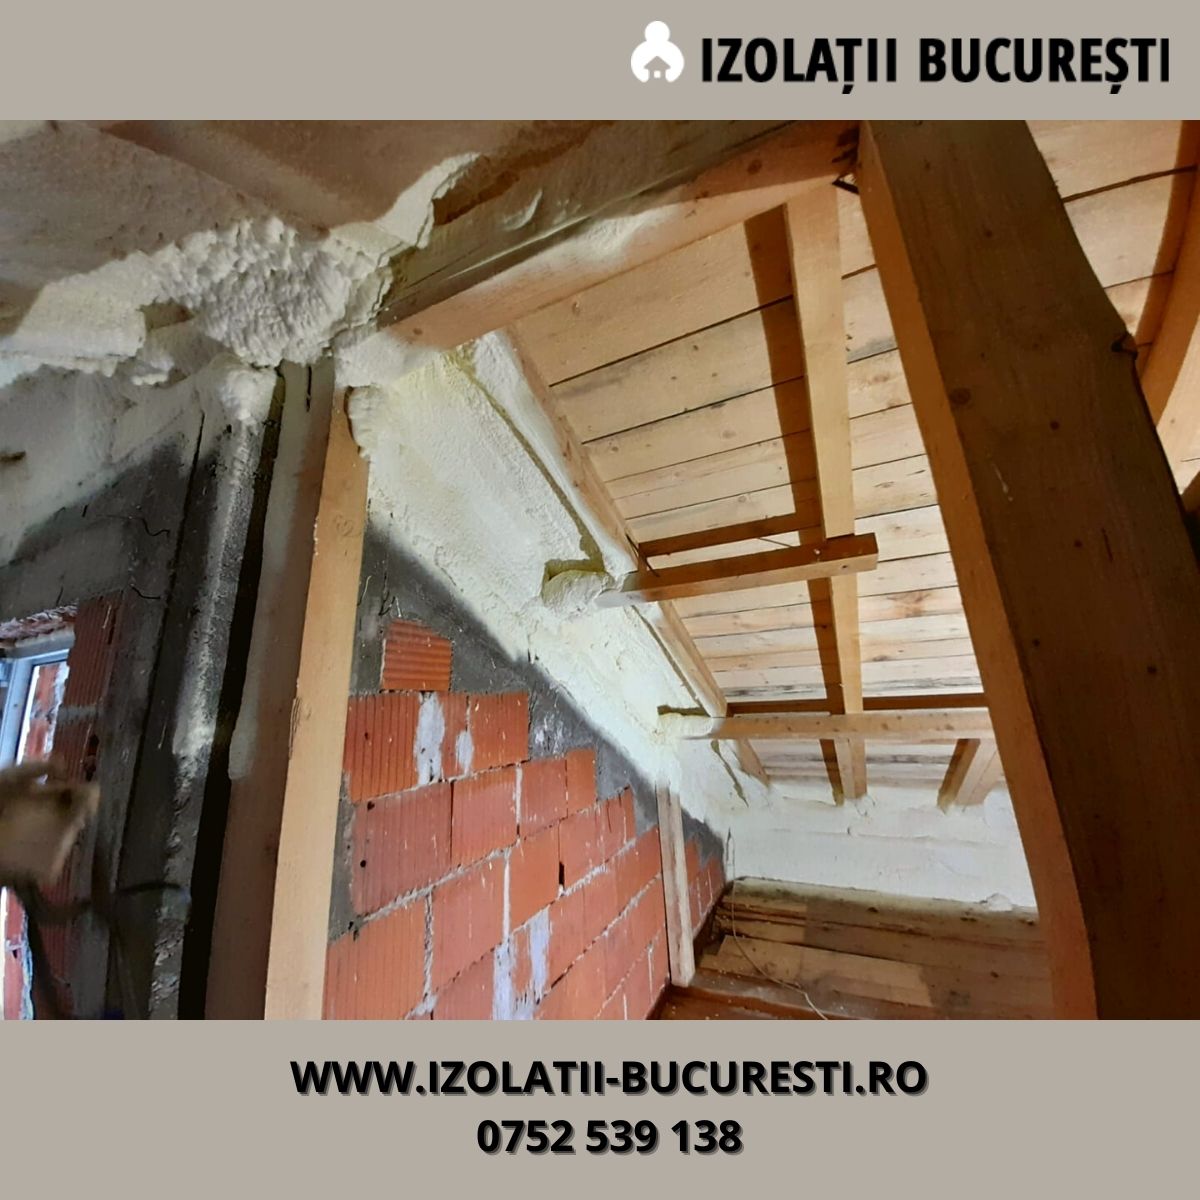 Read more about the article Izolatie pentru pod cu celula inchisa